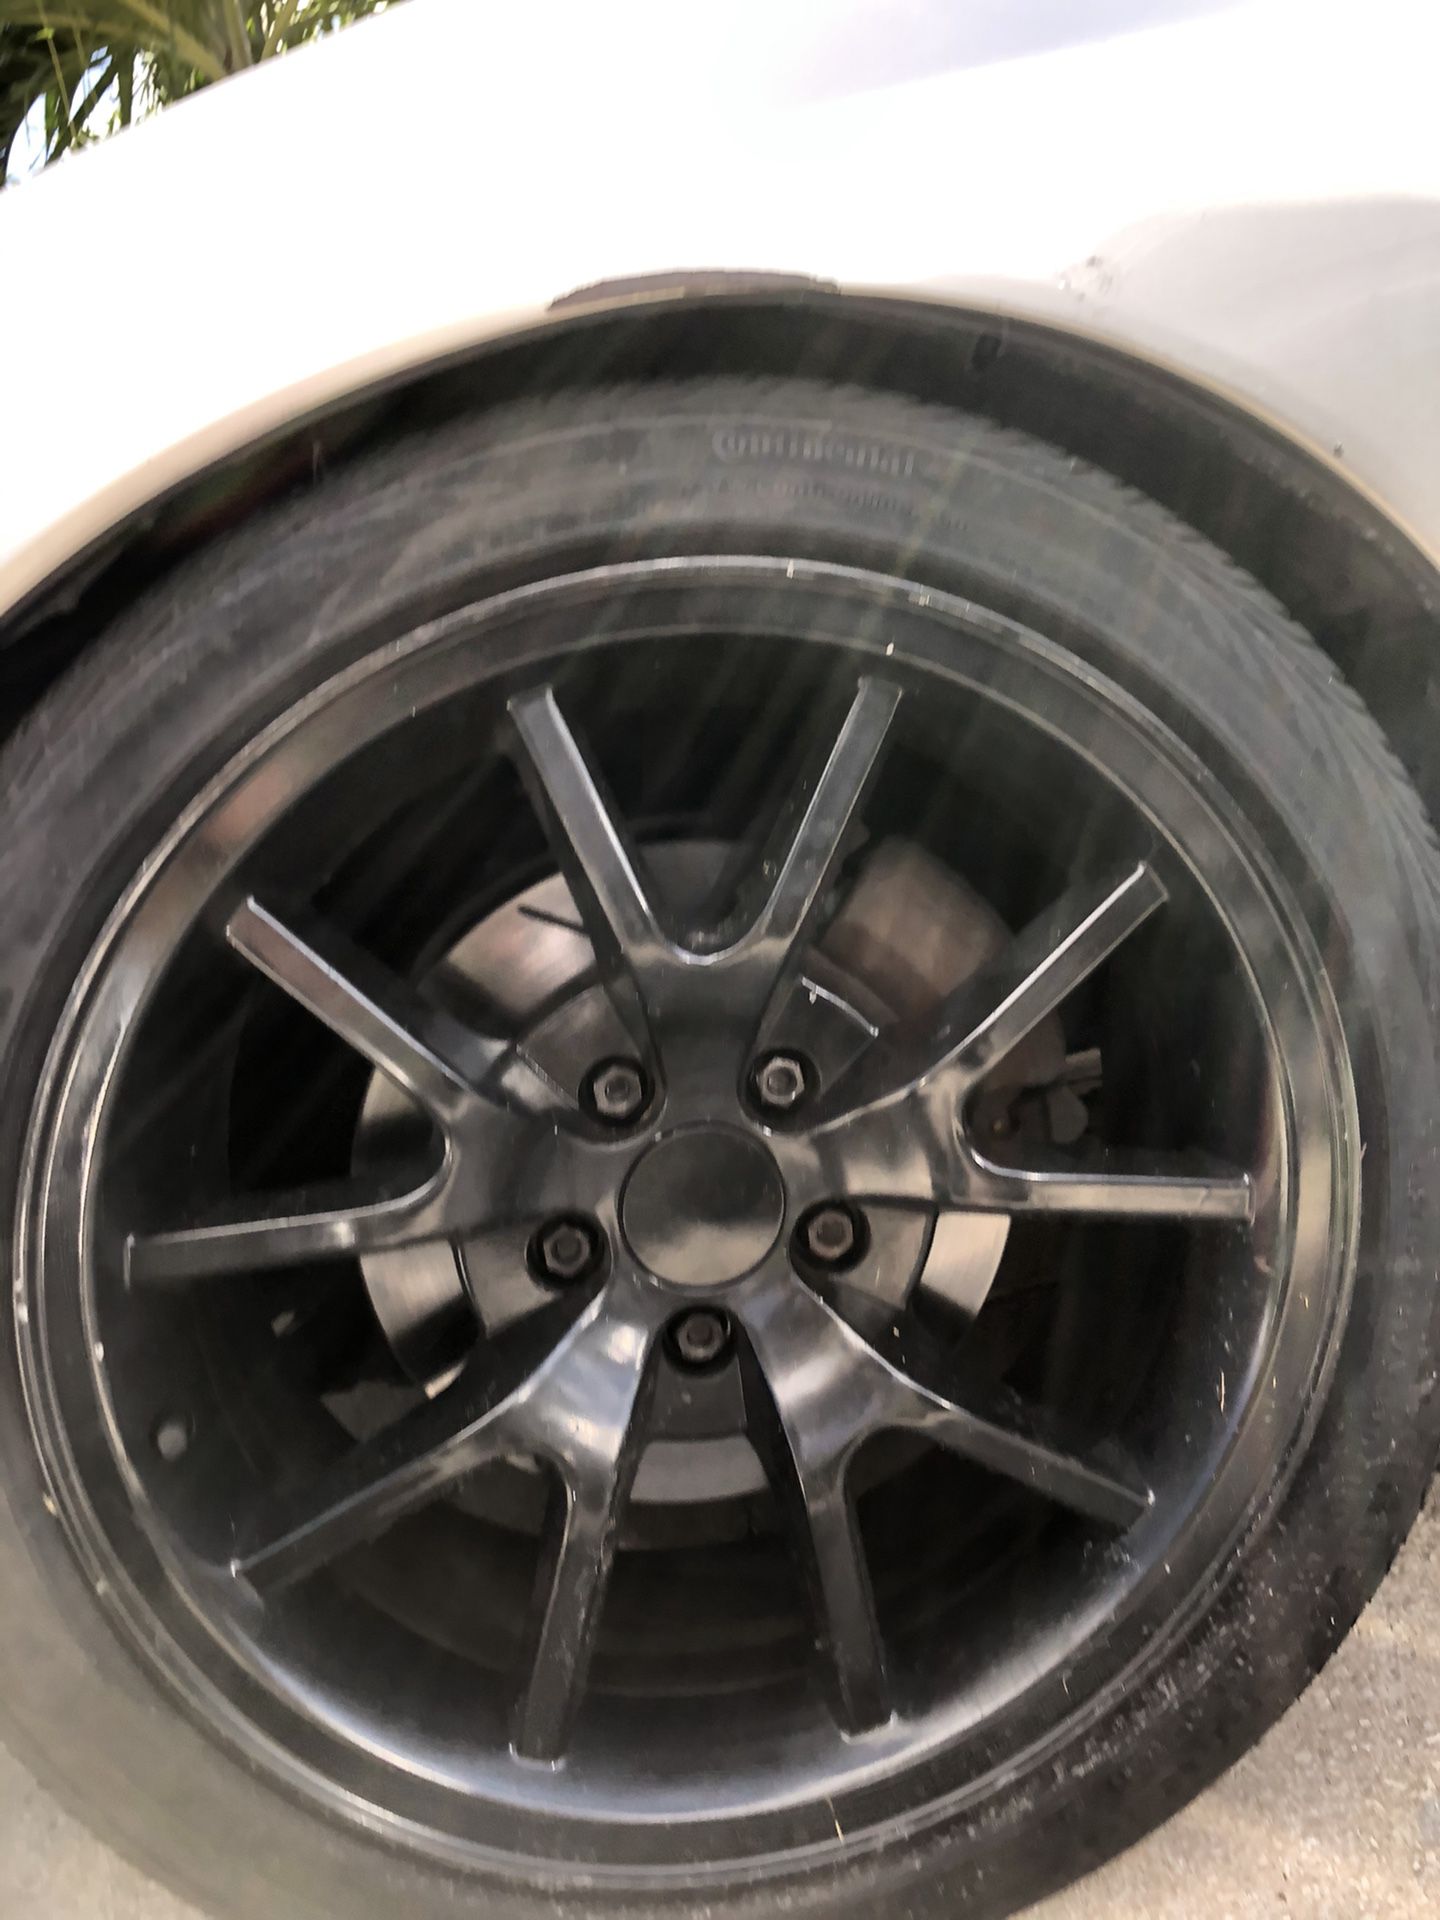 FR500 wheels mustang corvette